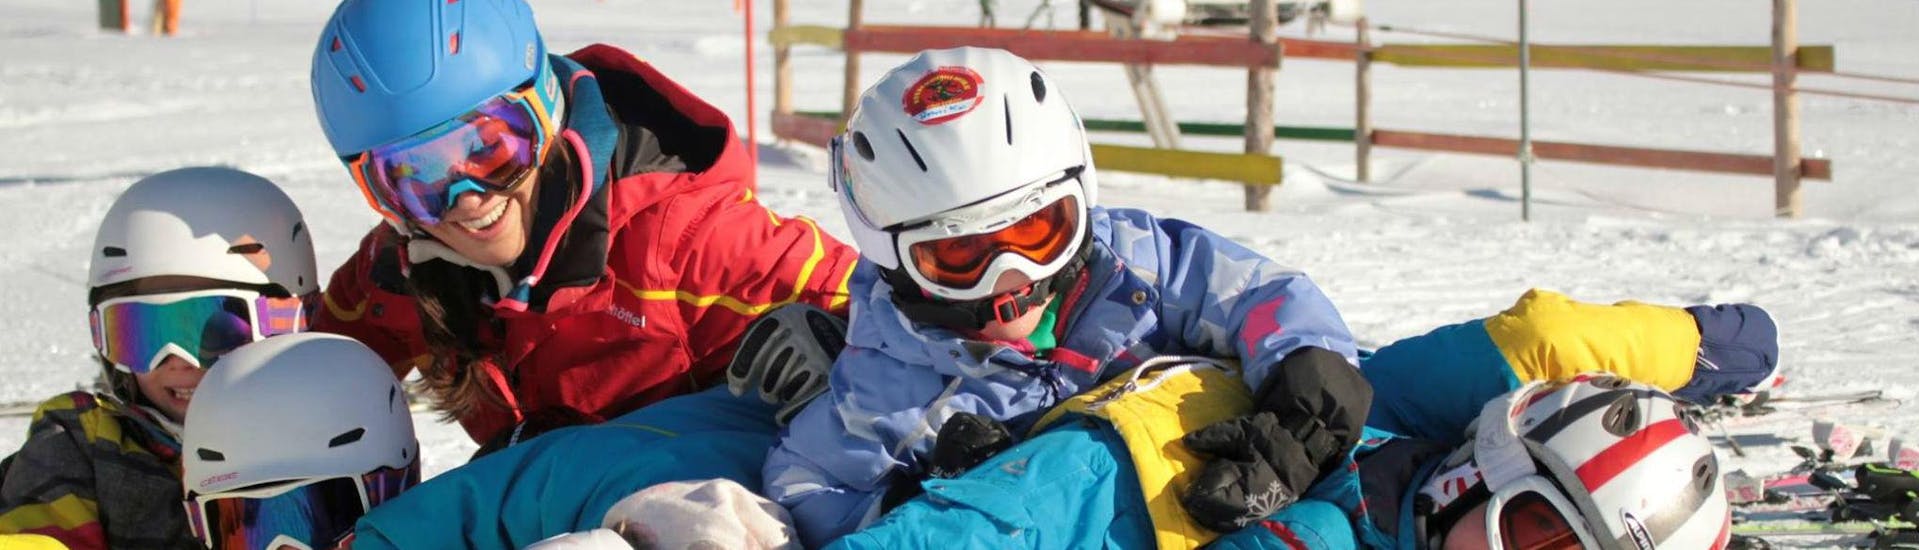 Clases de esquí para niños a partir de 3 años para avanzados.